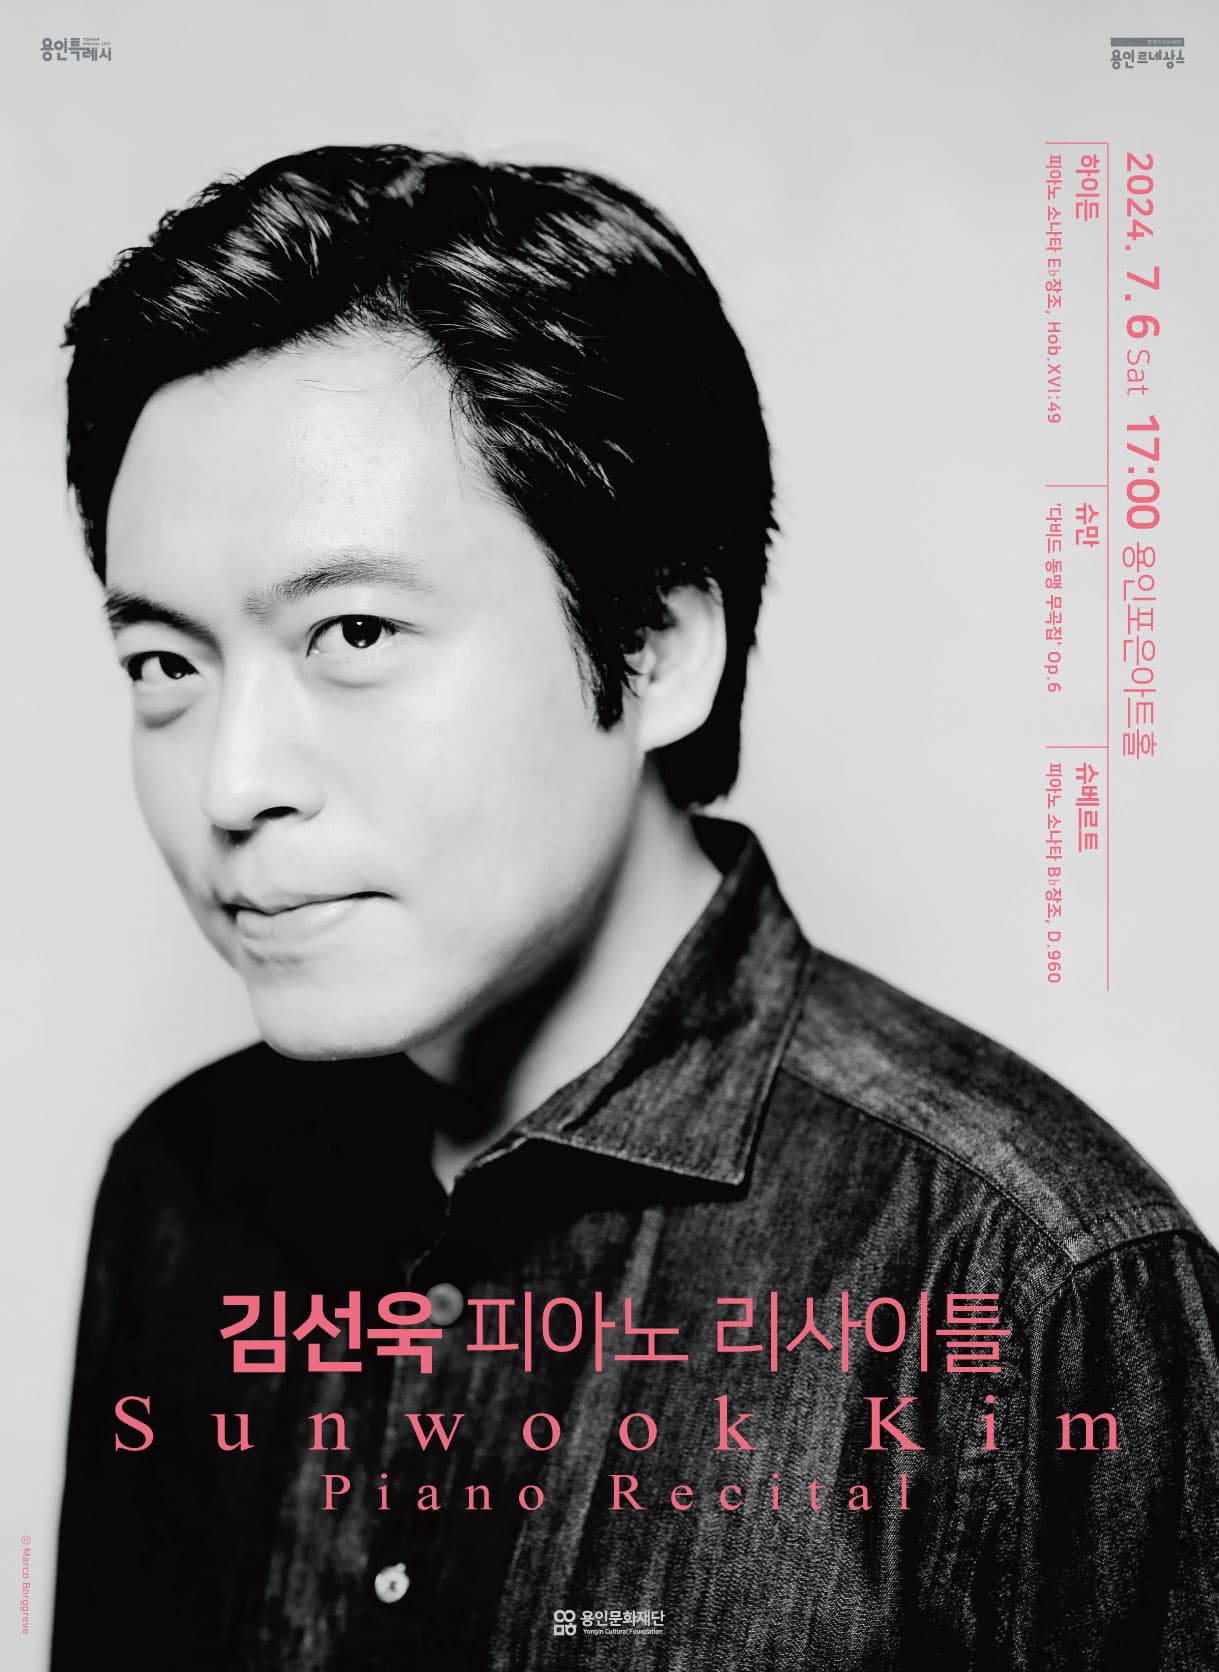 김선욱 피아노 리사이틀 Sunwook Kim Piano Recital